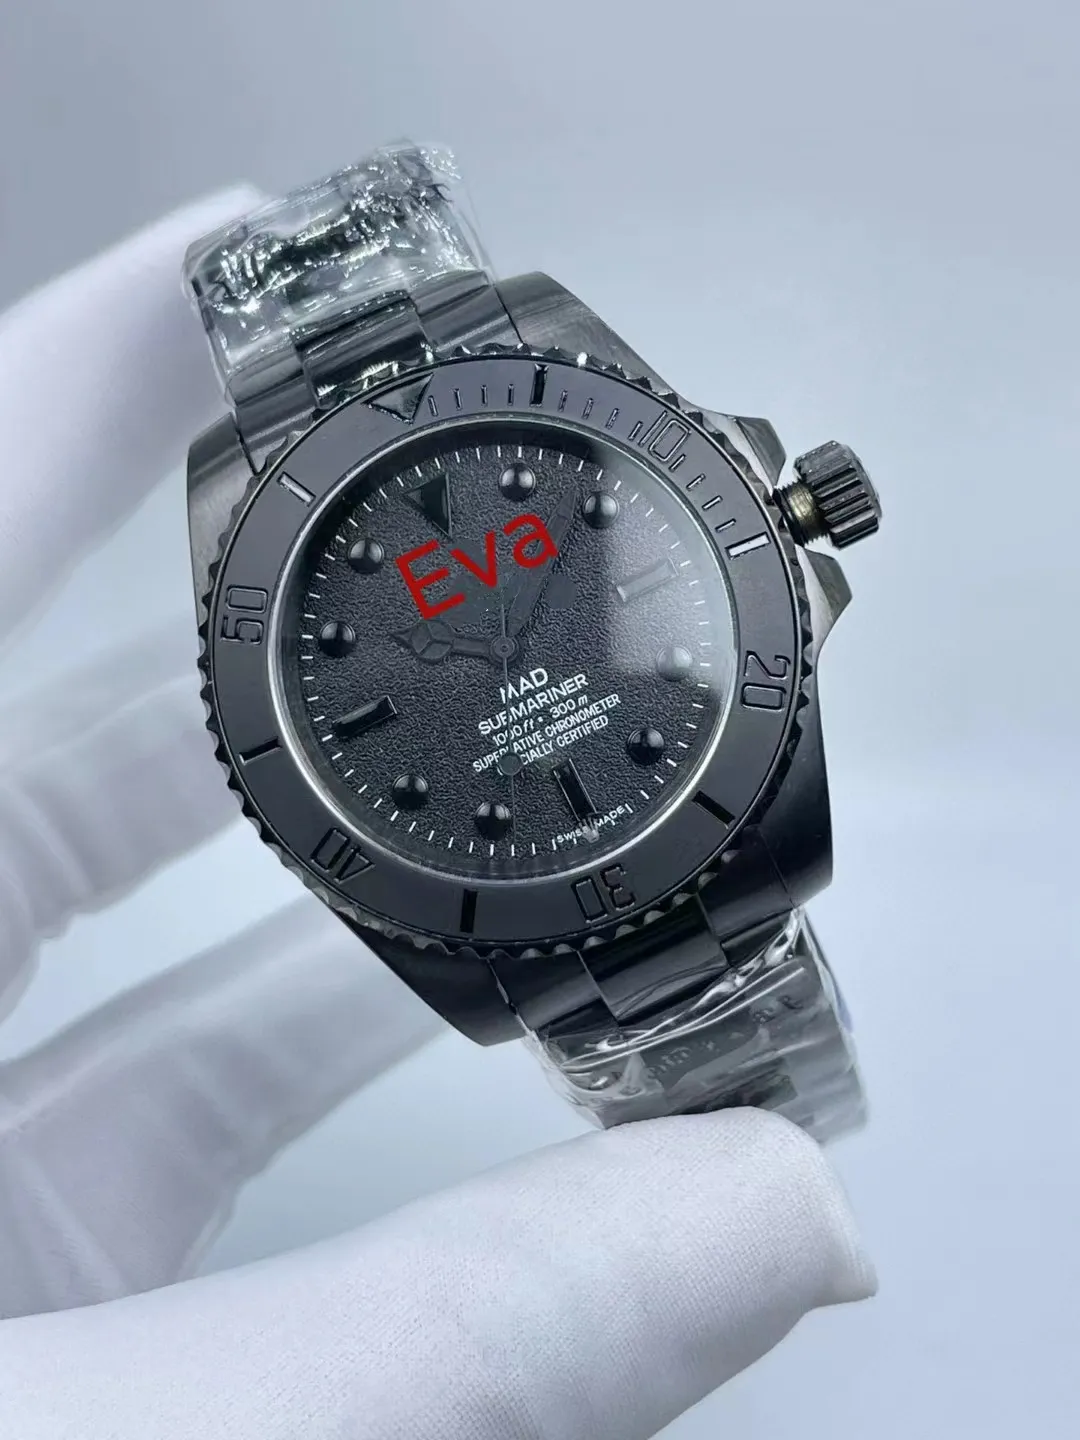 Relógio masculino 904L 40mm movimento mecânico automático personalizado caixa preta fosca clássico